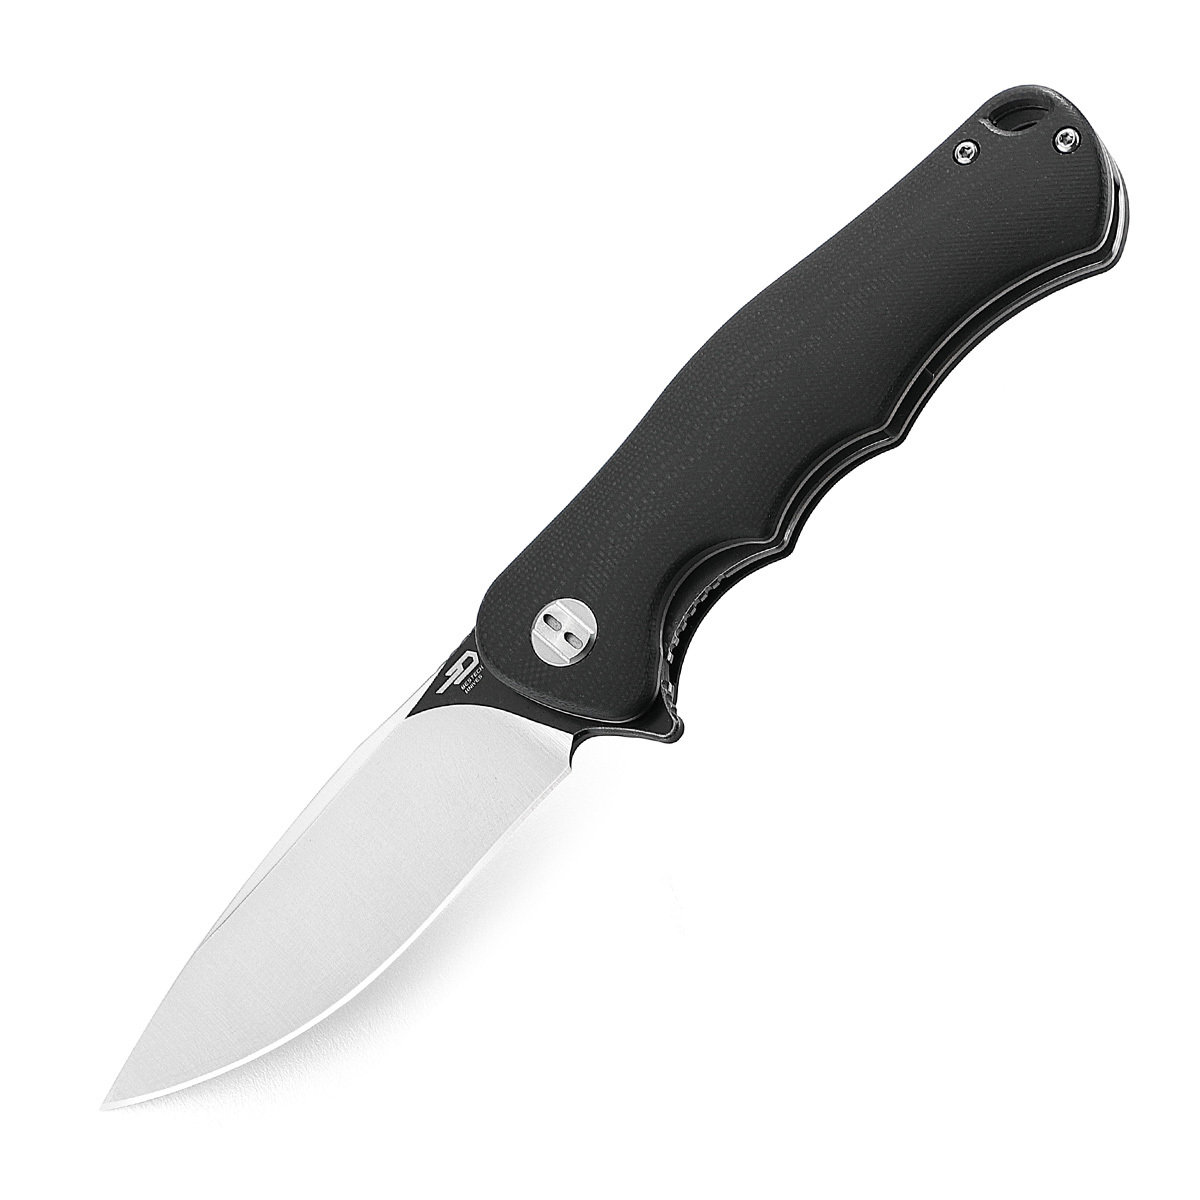 Складной нож Bestech Bobcat, сталь D2, рукоять G10, черный складной нож bestech swift сталь d2 micarta